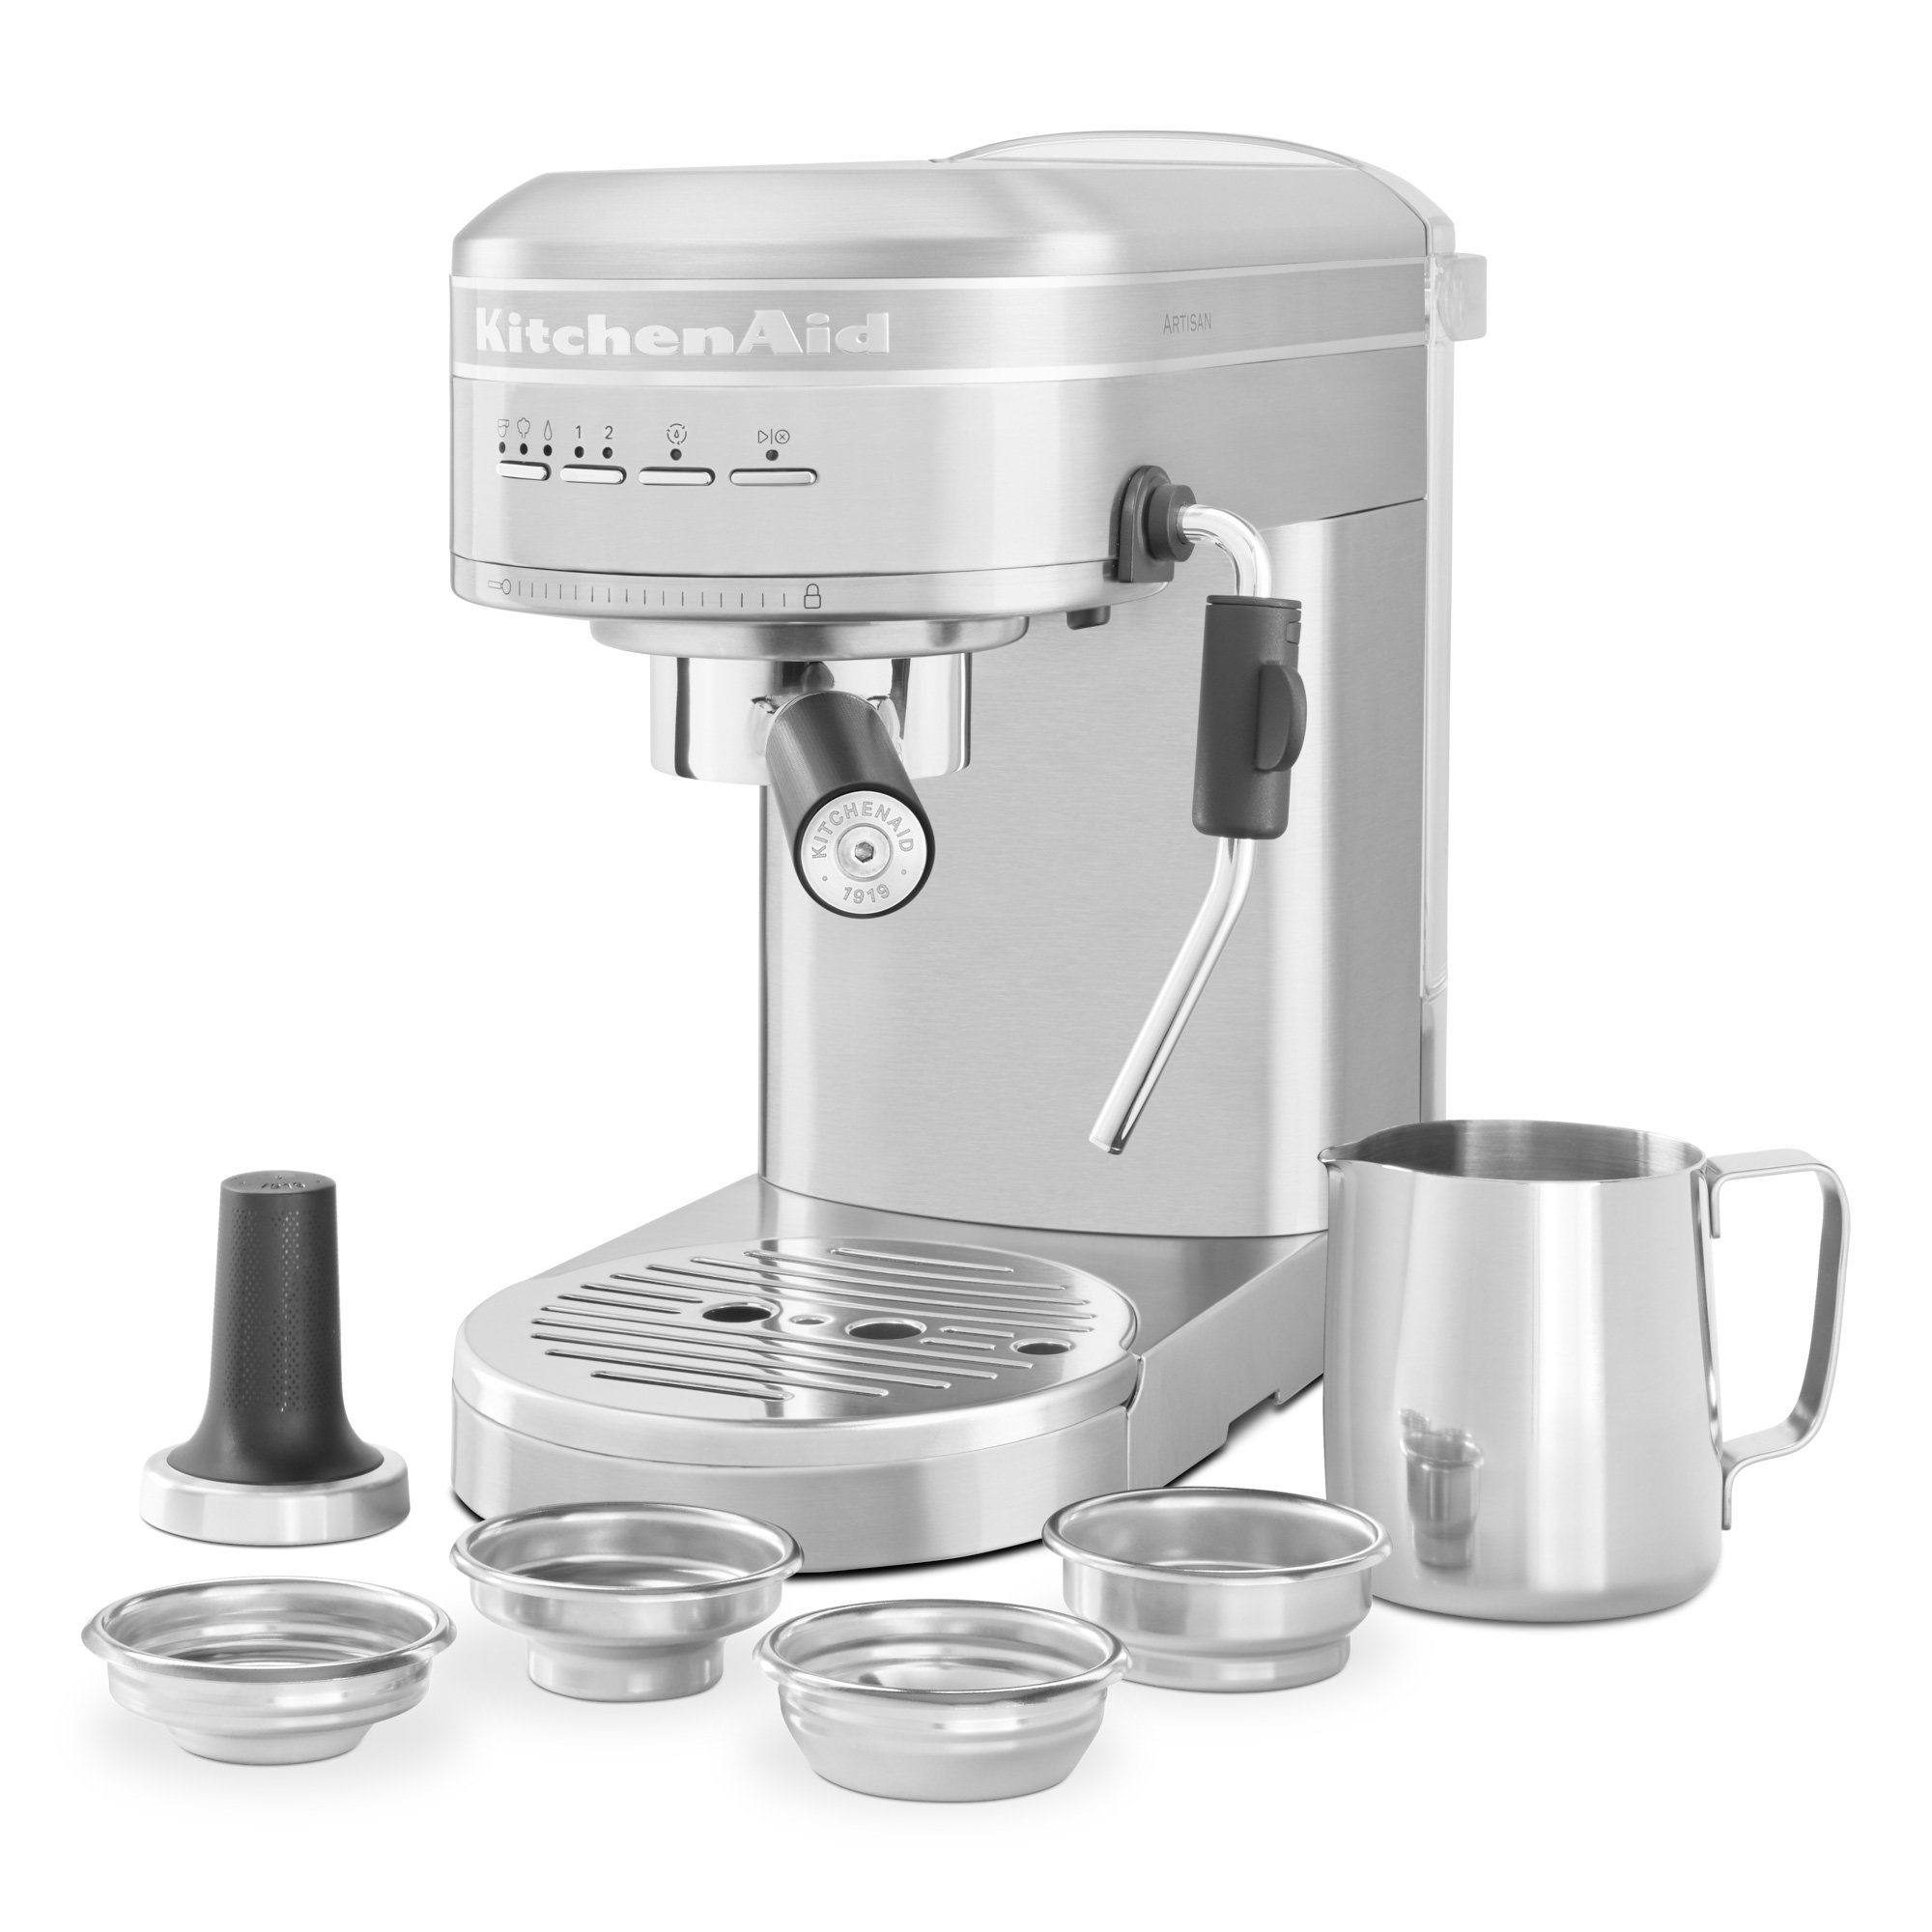 KitchenAid Artisan 5KES6503 espressomaskine, stainless steel